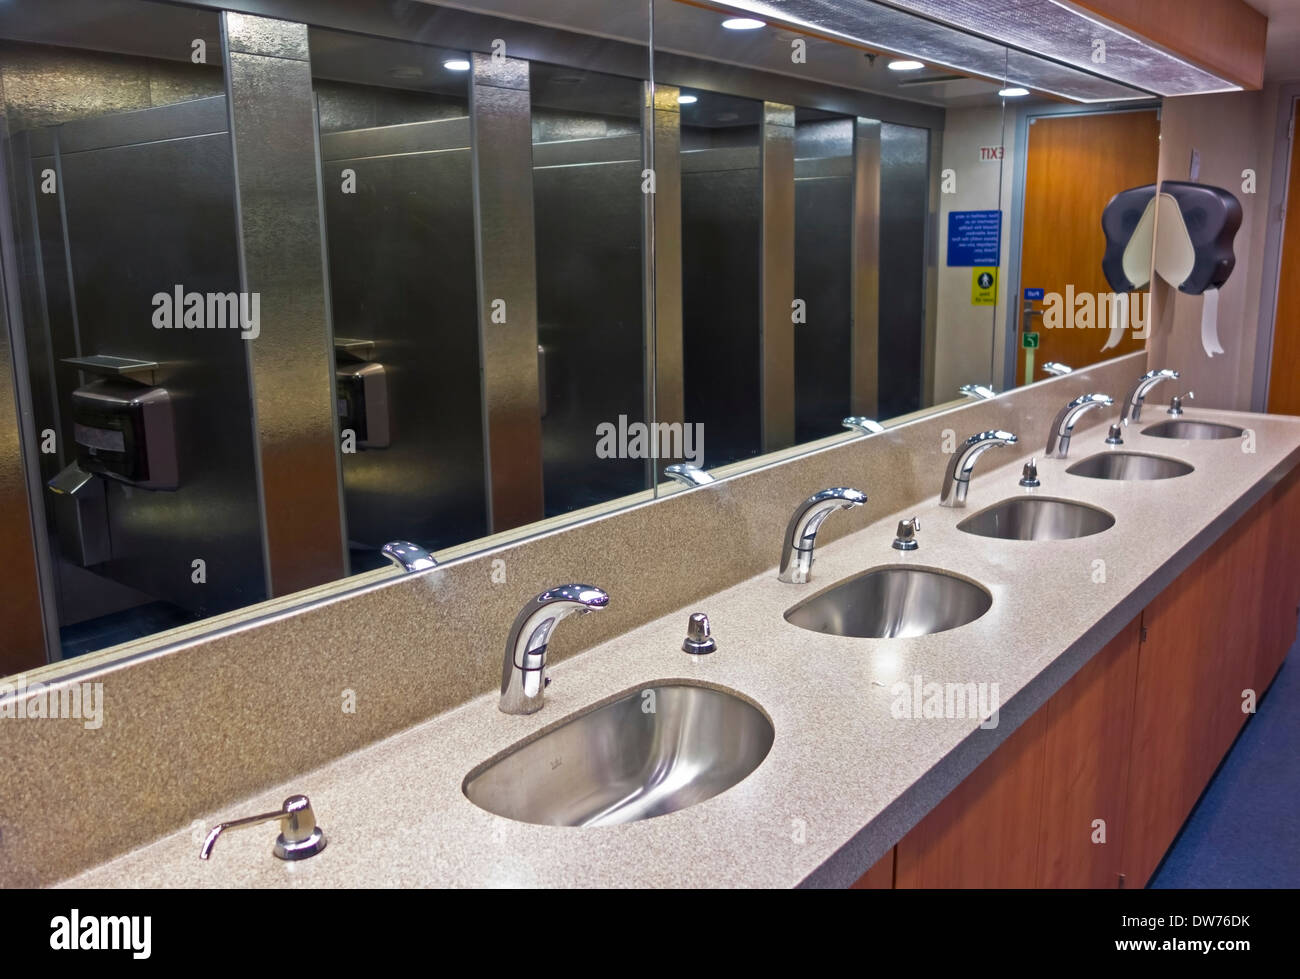 Eine Reihe von Waschbecken und Metallständen, die sich in den Spiegeln eines Fährschiffes spiegeln. Automatische Wasserhähne für mehr Sauberkeit. Stockfoto